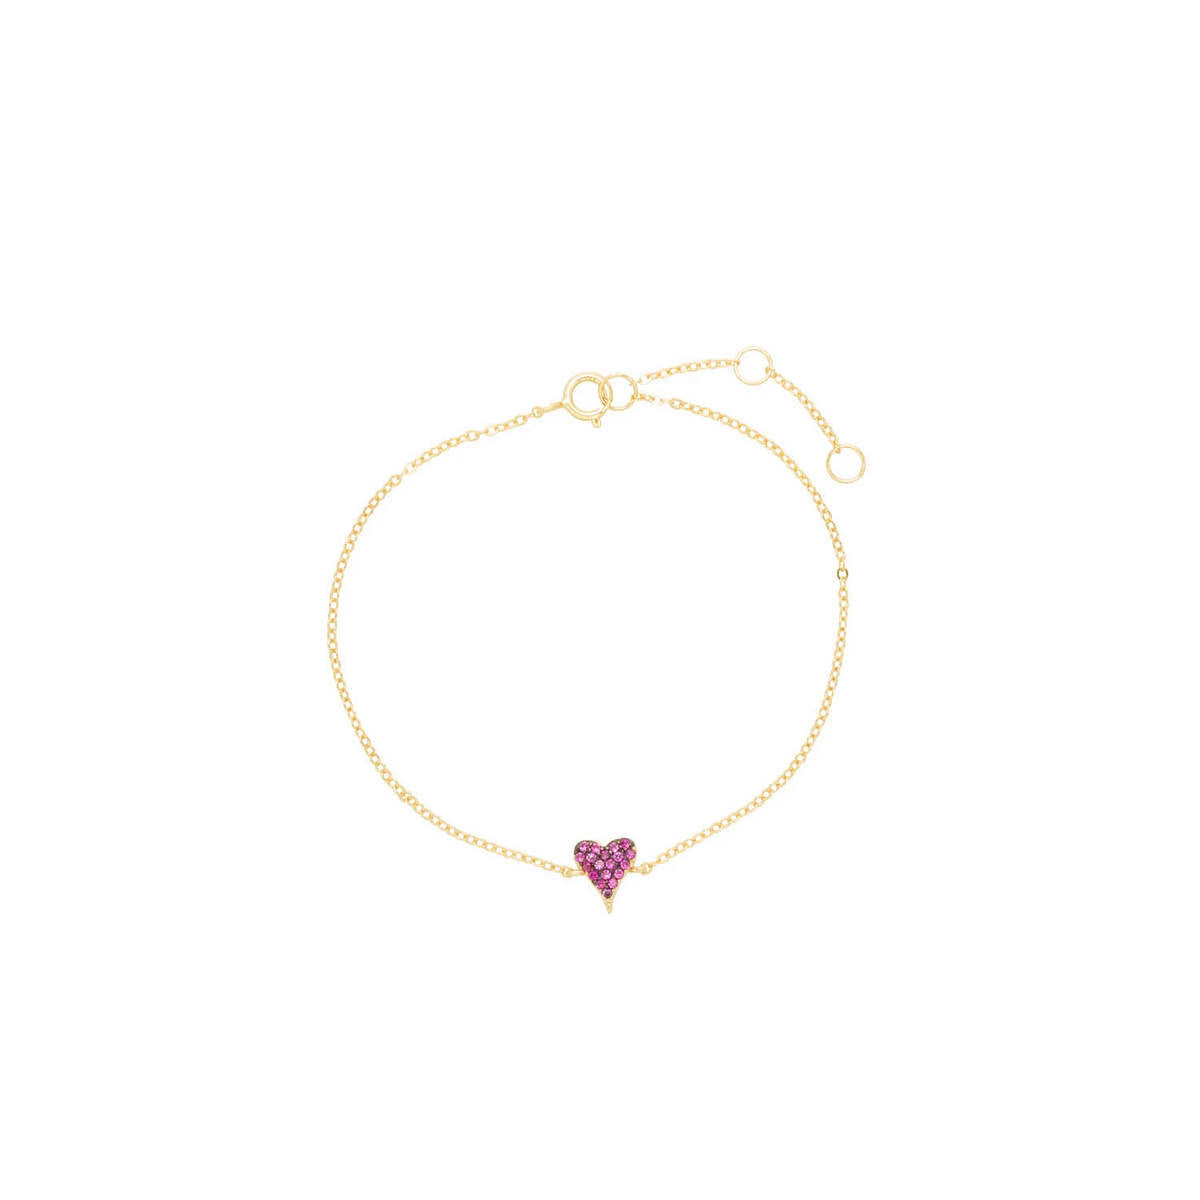 Pink Heart Bracelet